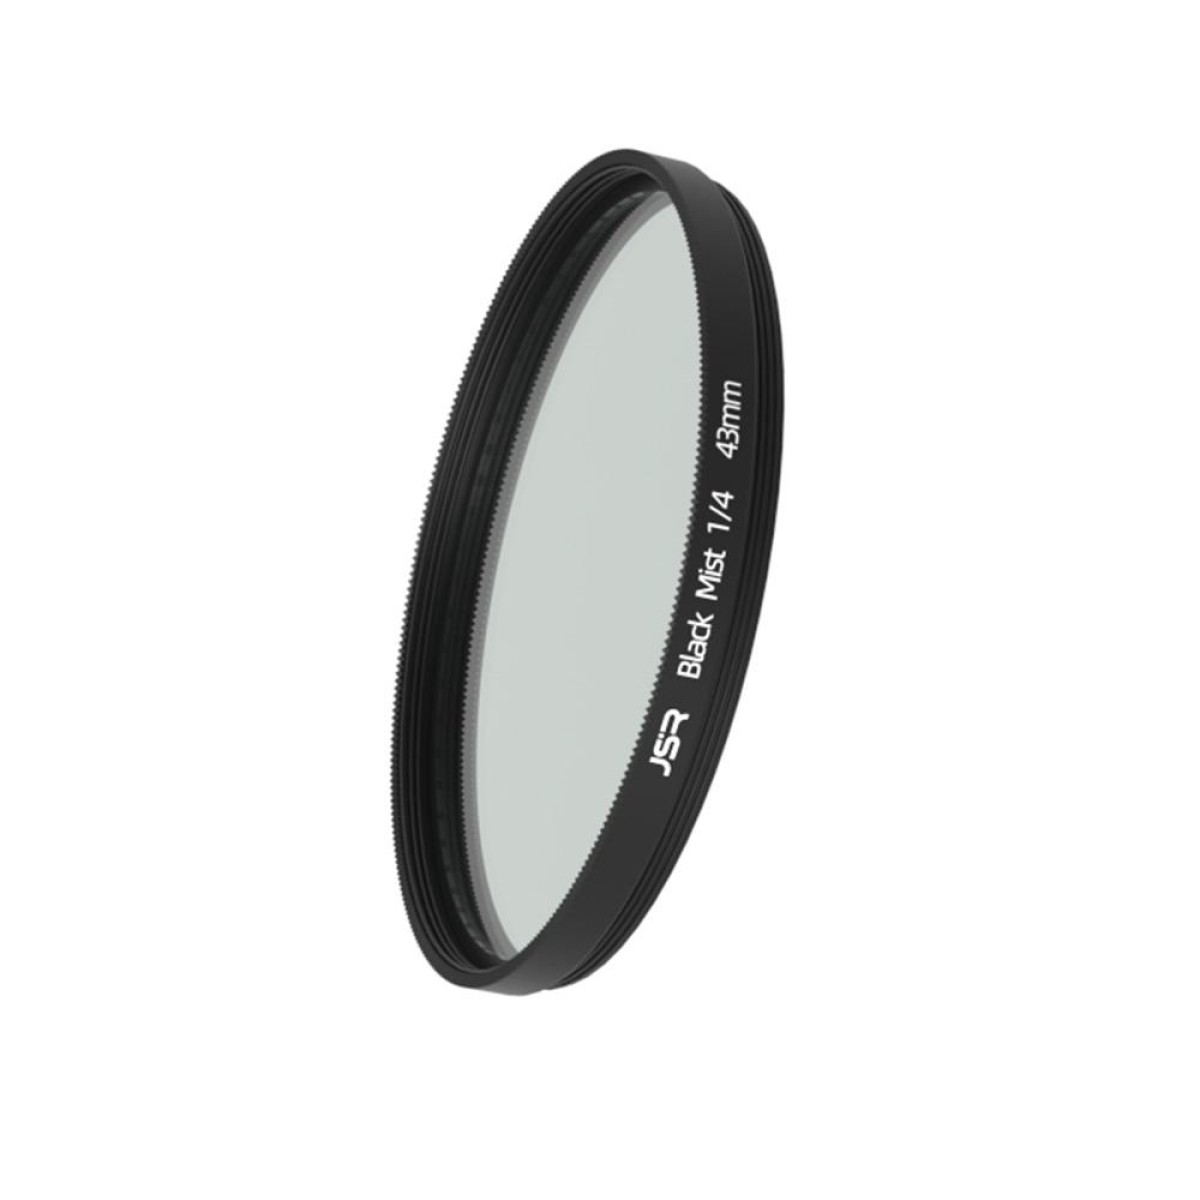 JSR Black Mist Filter Camera Lens Filter, Size:43mm(1/4 Filter)